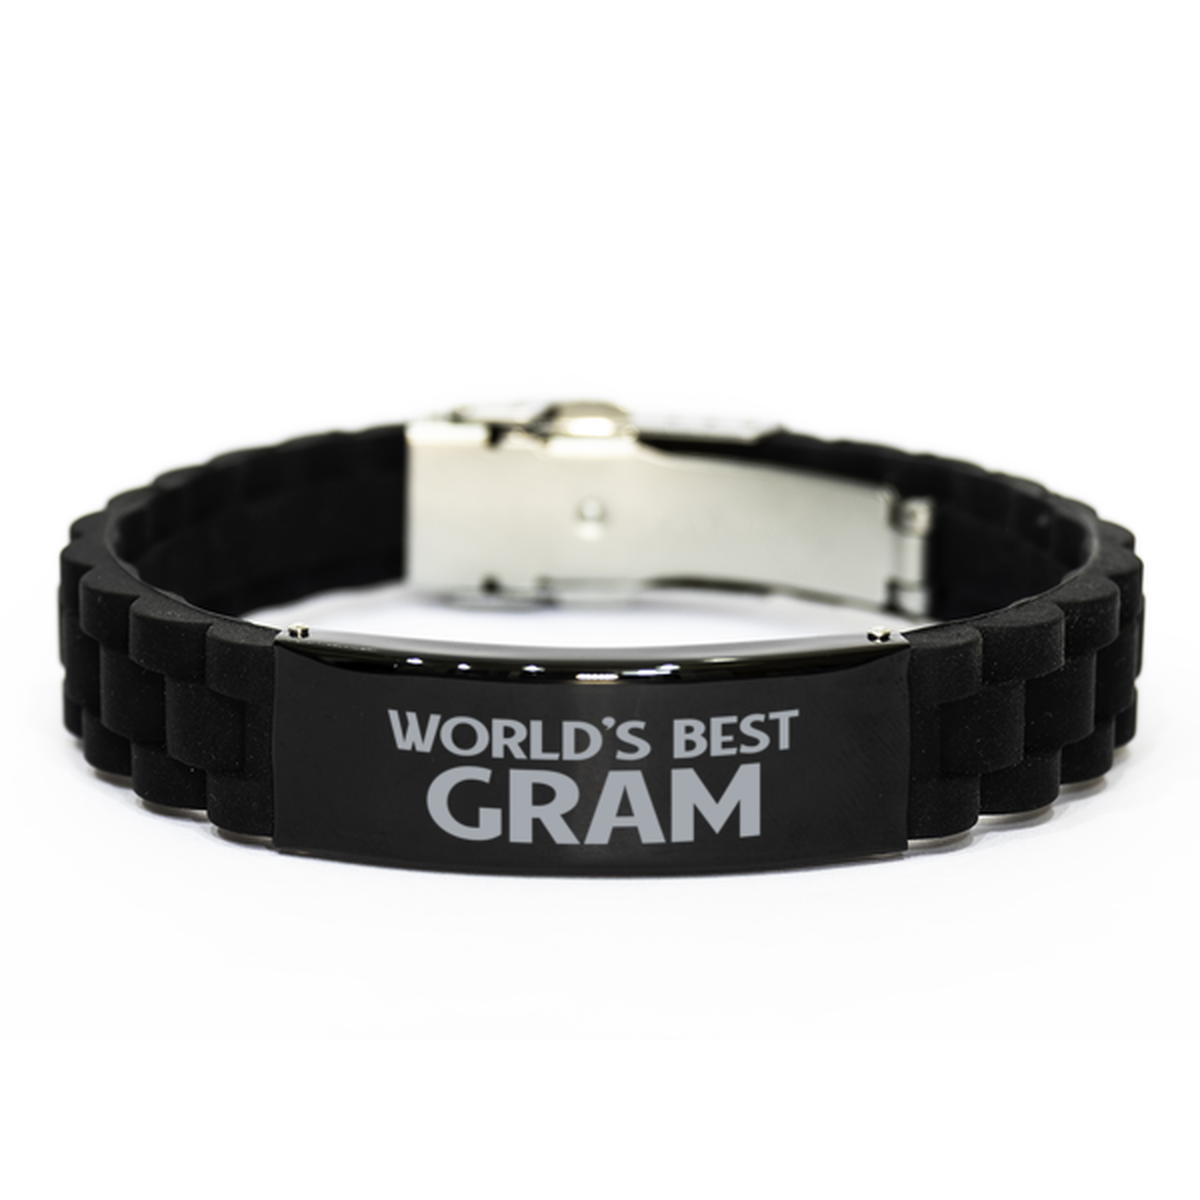 World's Best Gram Gifts, Funny Black Engraved Bracelet For Gram, Family Gifts For Women